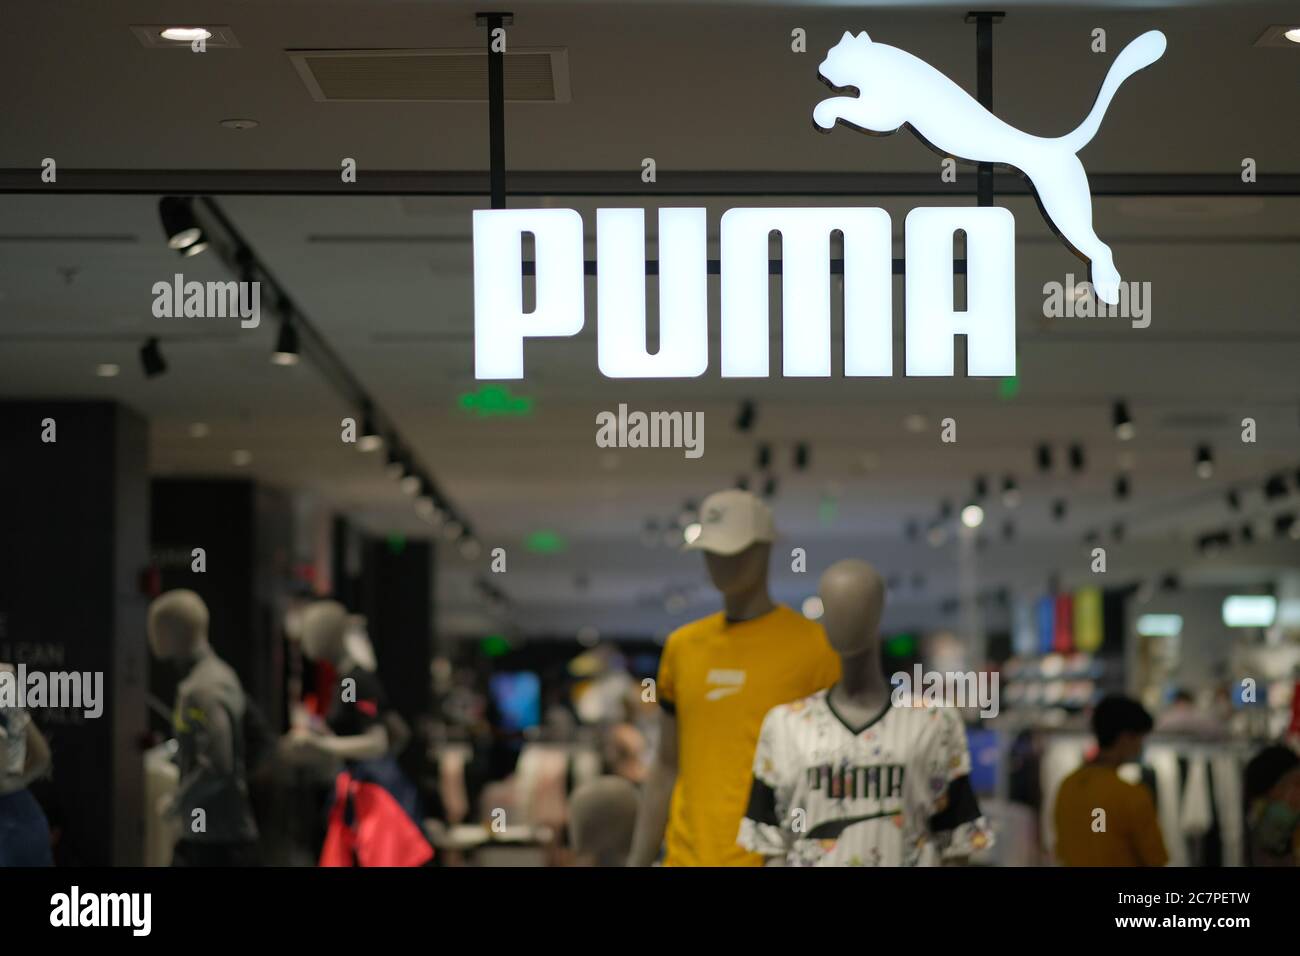 La Multinacional Alemana De Ropa Deportiva Puma Y Puma Select Tienda Vista  En Hong Kong Fotografía De Stock Alamy | sptc.edu.bd